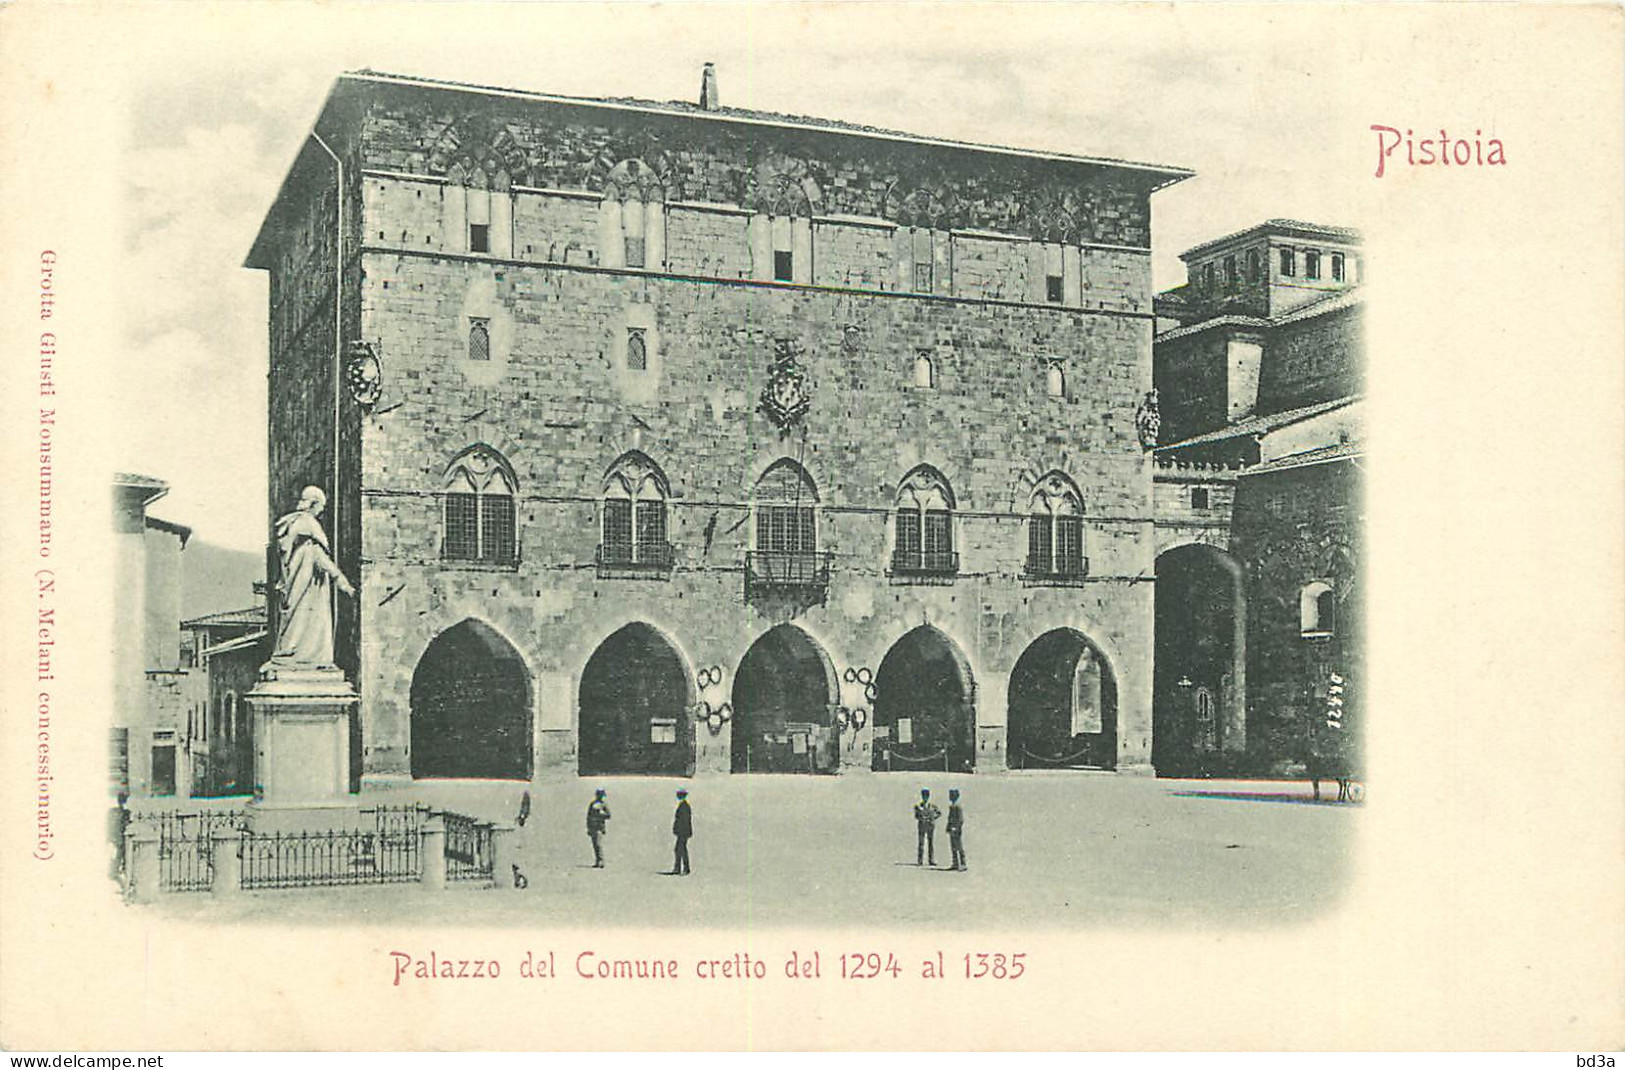  ITALIA  PISTOIA  Palazzo del Comune cretto del 1294 al 1385